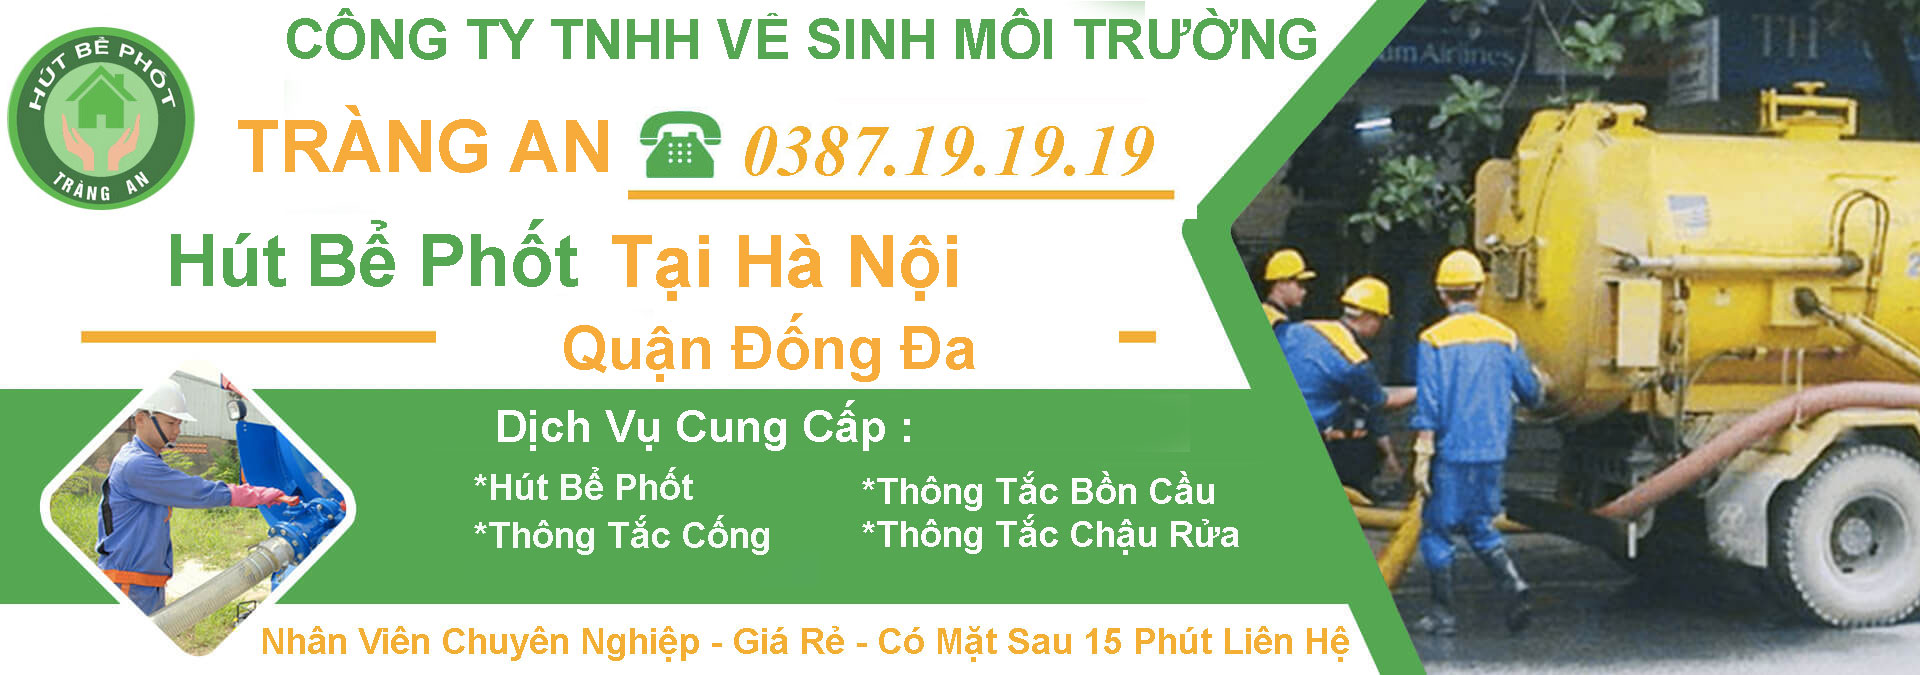 Thong Tac Cong Ha Noi Dong Da